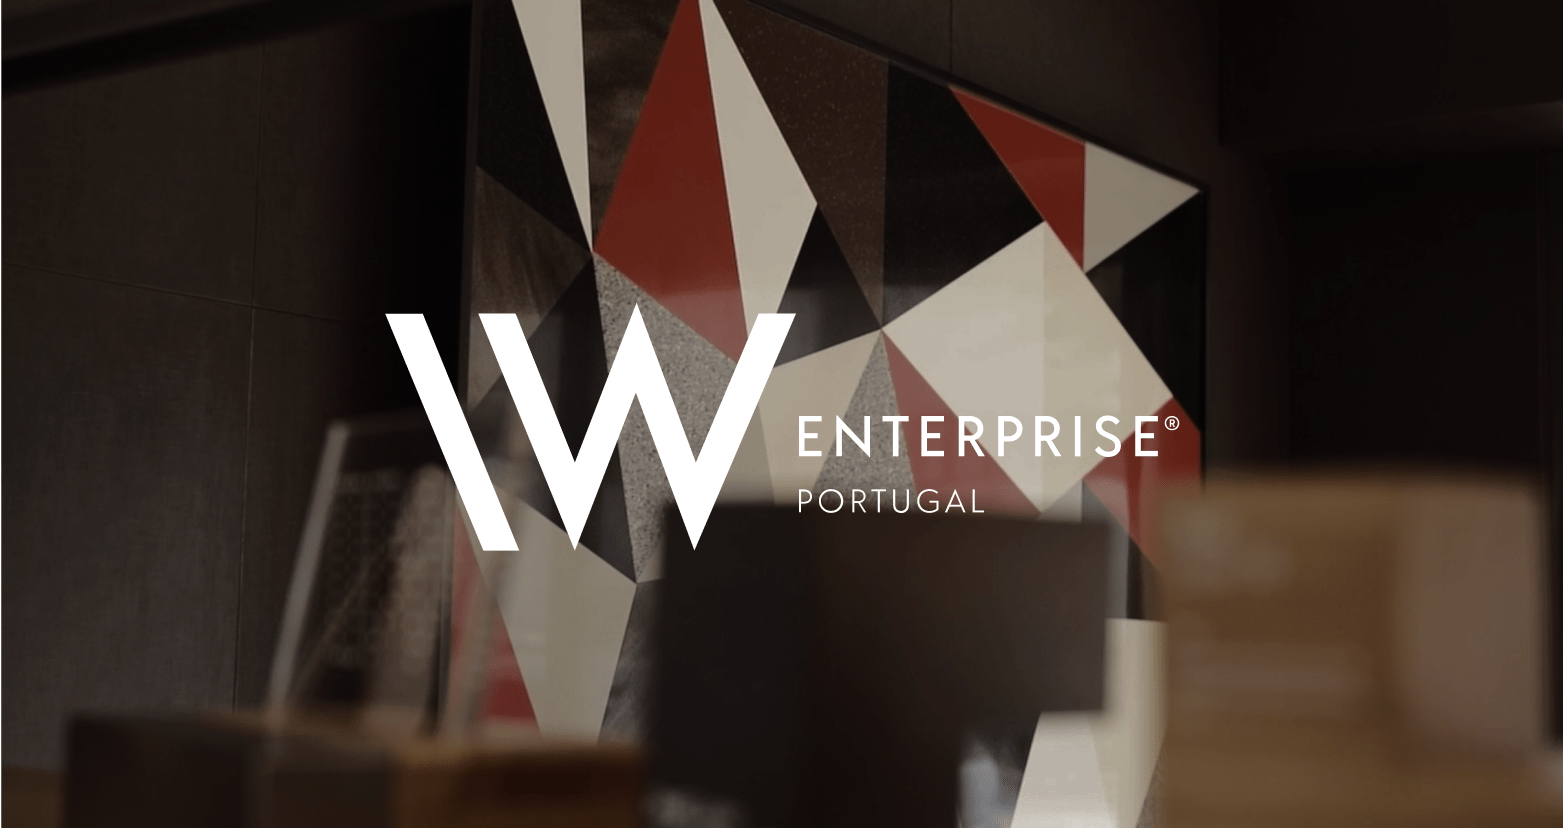 IW Enterprise Design Editorial